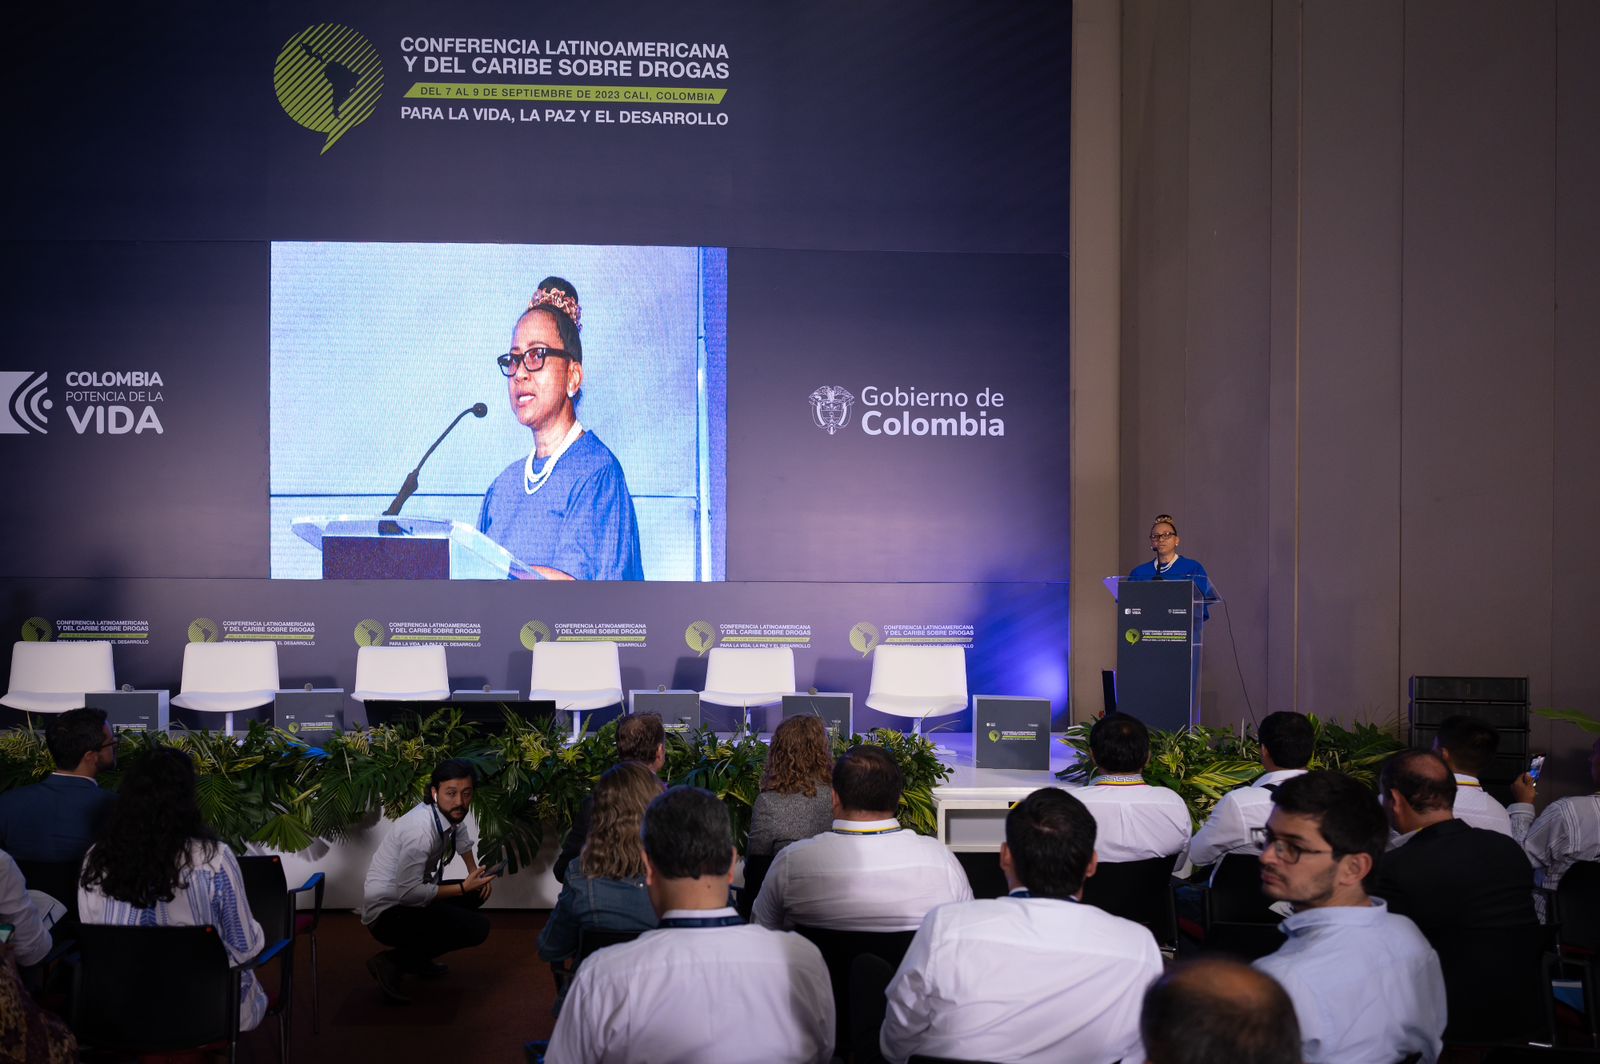 Conferencia Latinoamericana y del Caribe sobre drogas abre diálogo regional para repensar la forma en que se está enfrentando este problema a nivel mundial